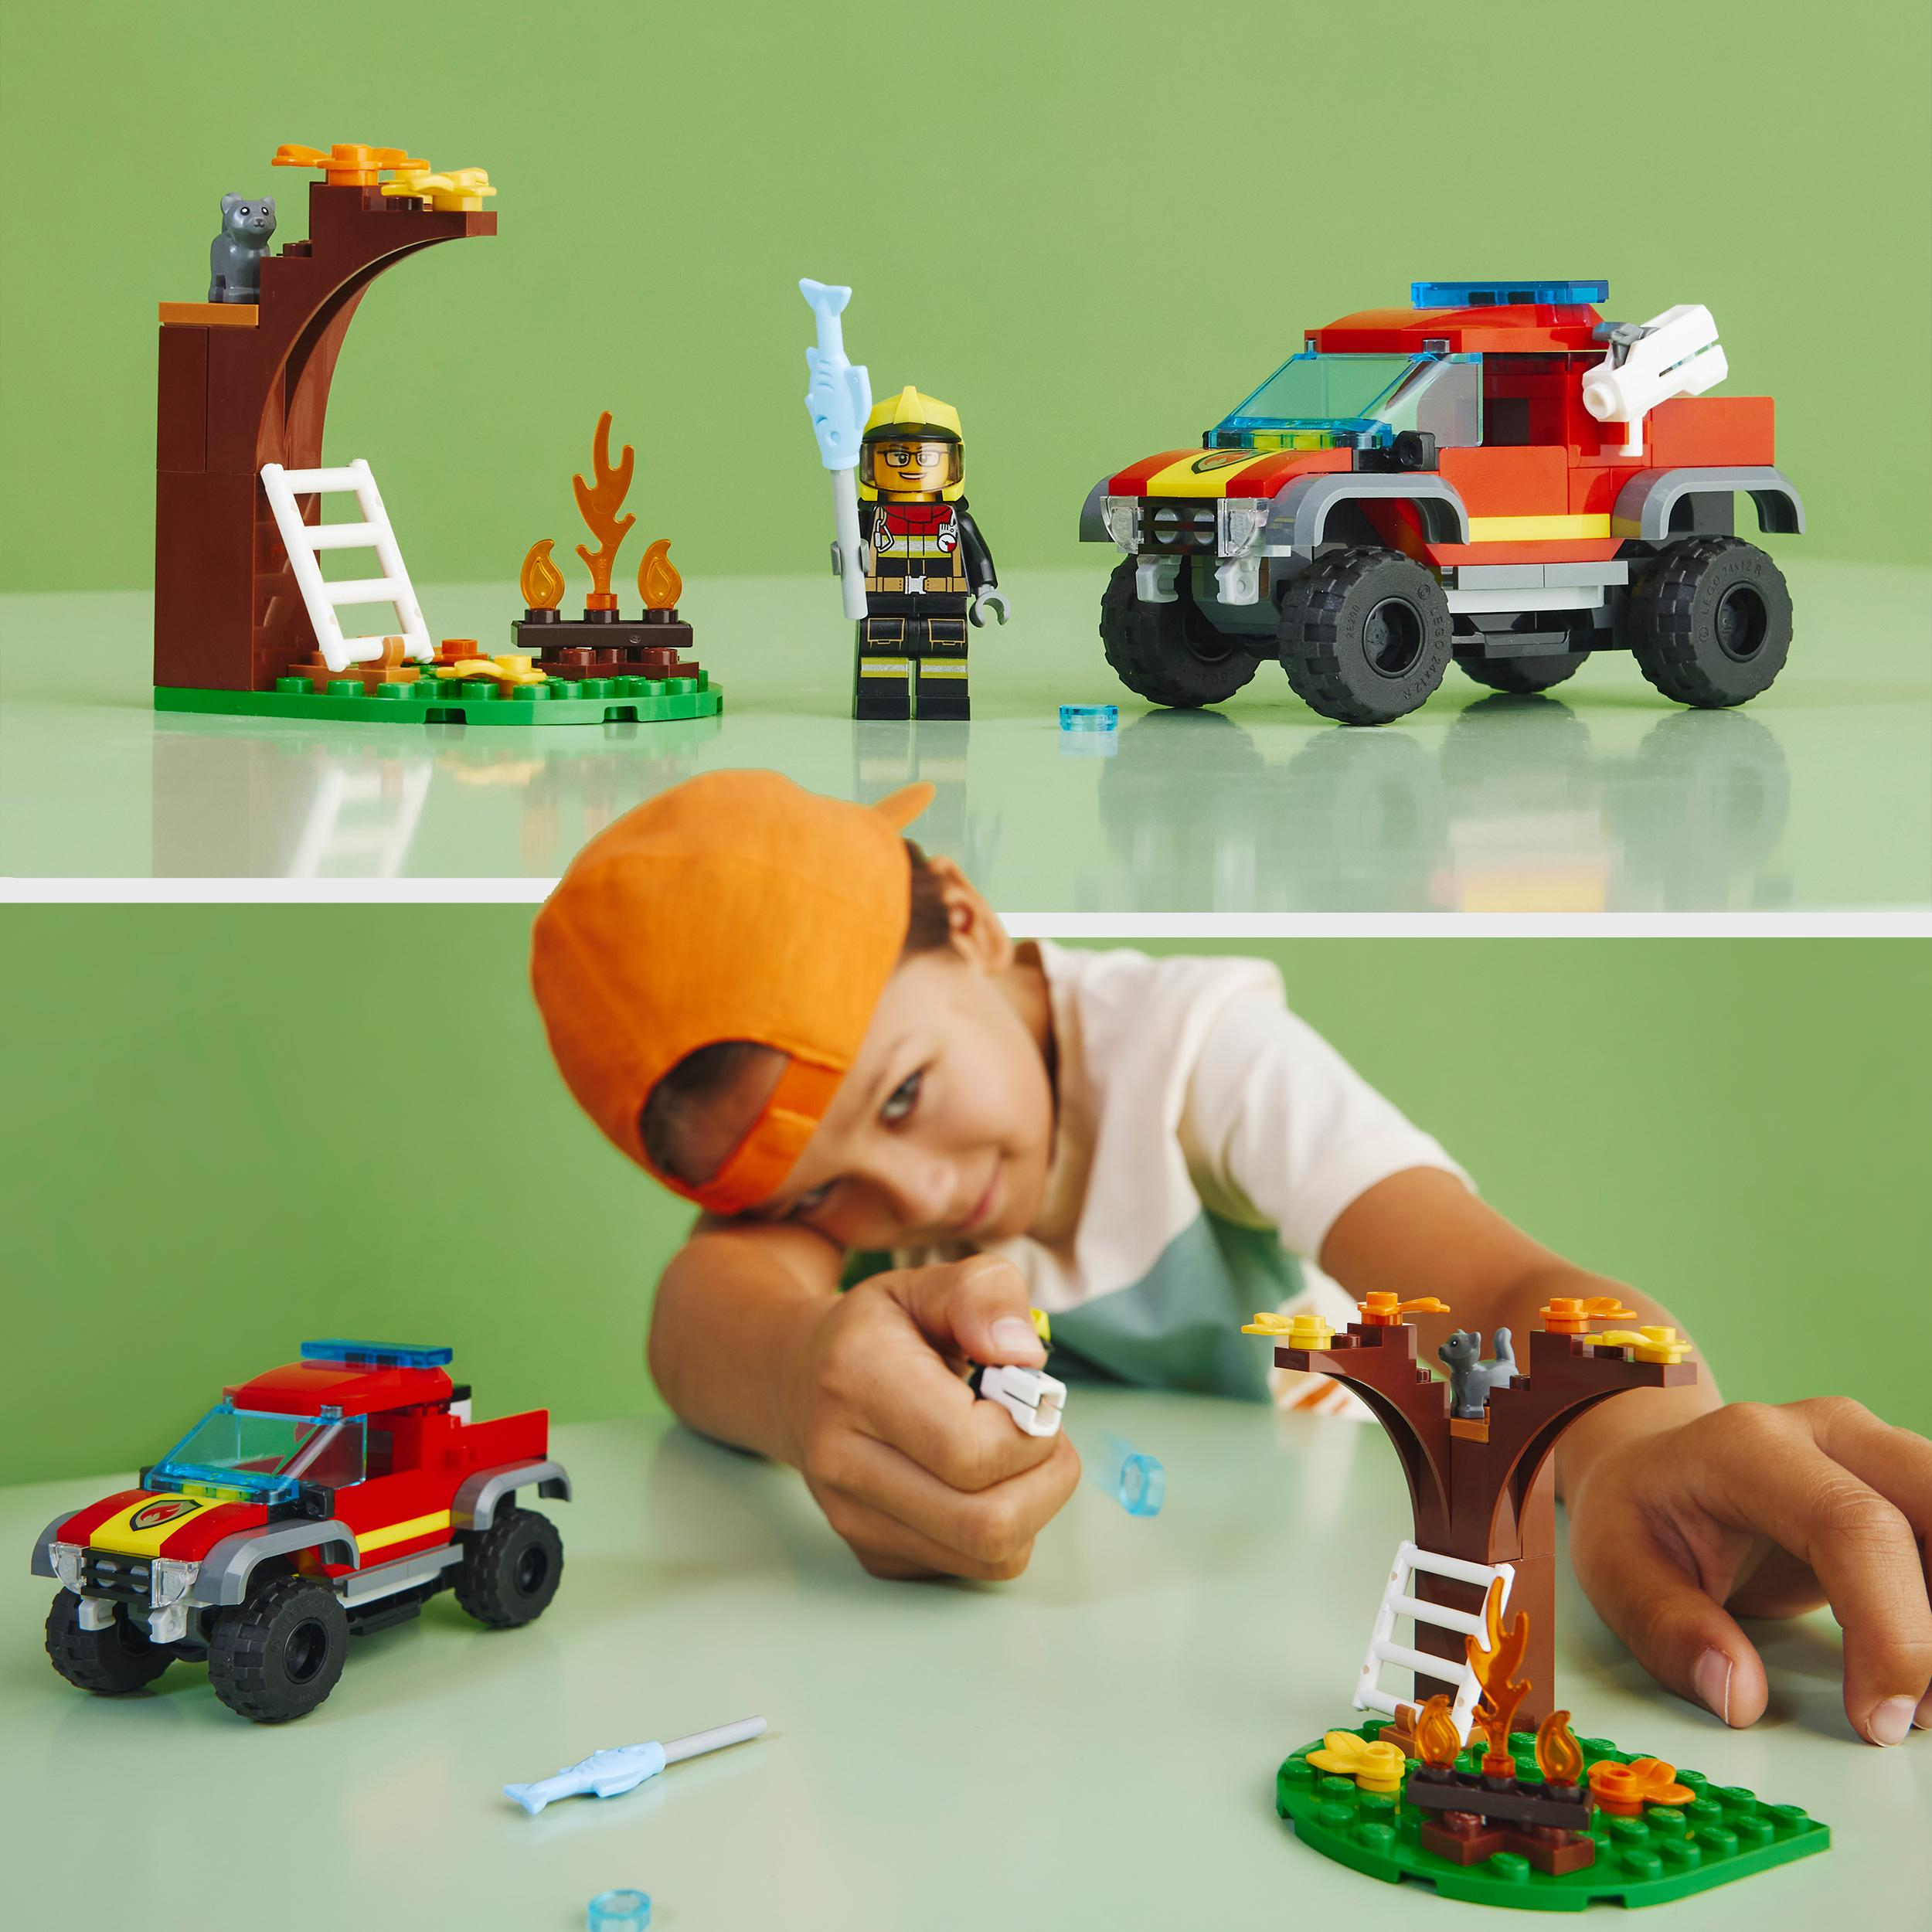 LEGO City 60393 Feuerwehr-Pickup Bausatz, Mehrfarbig